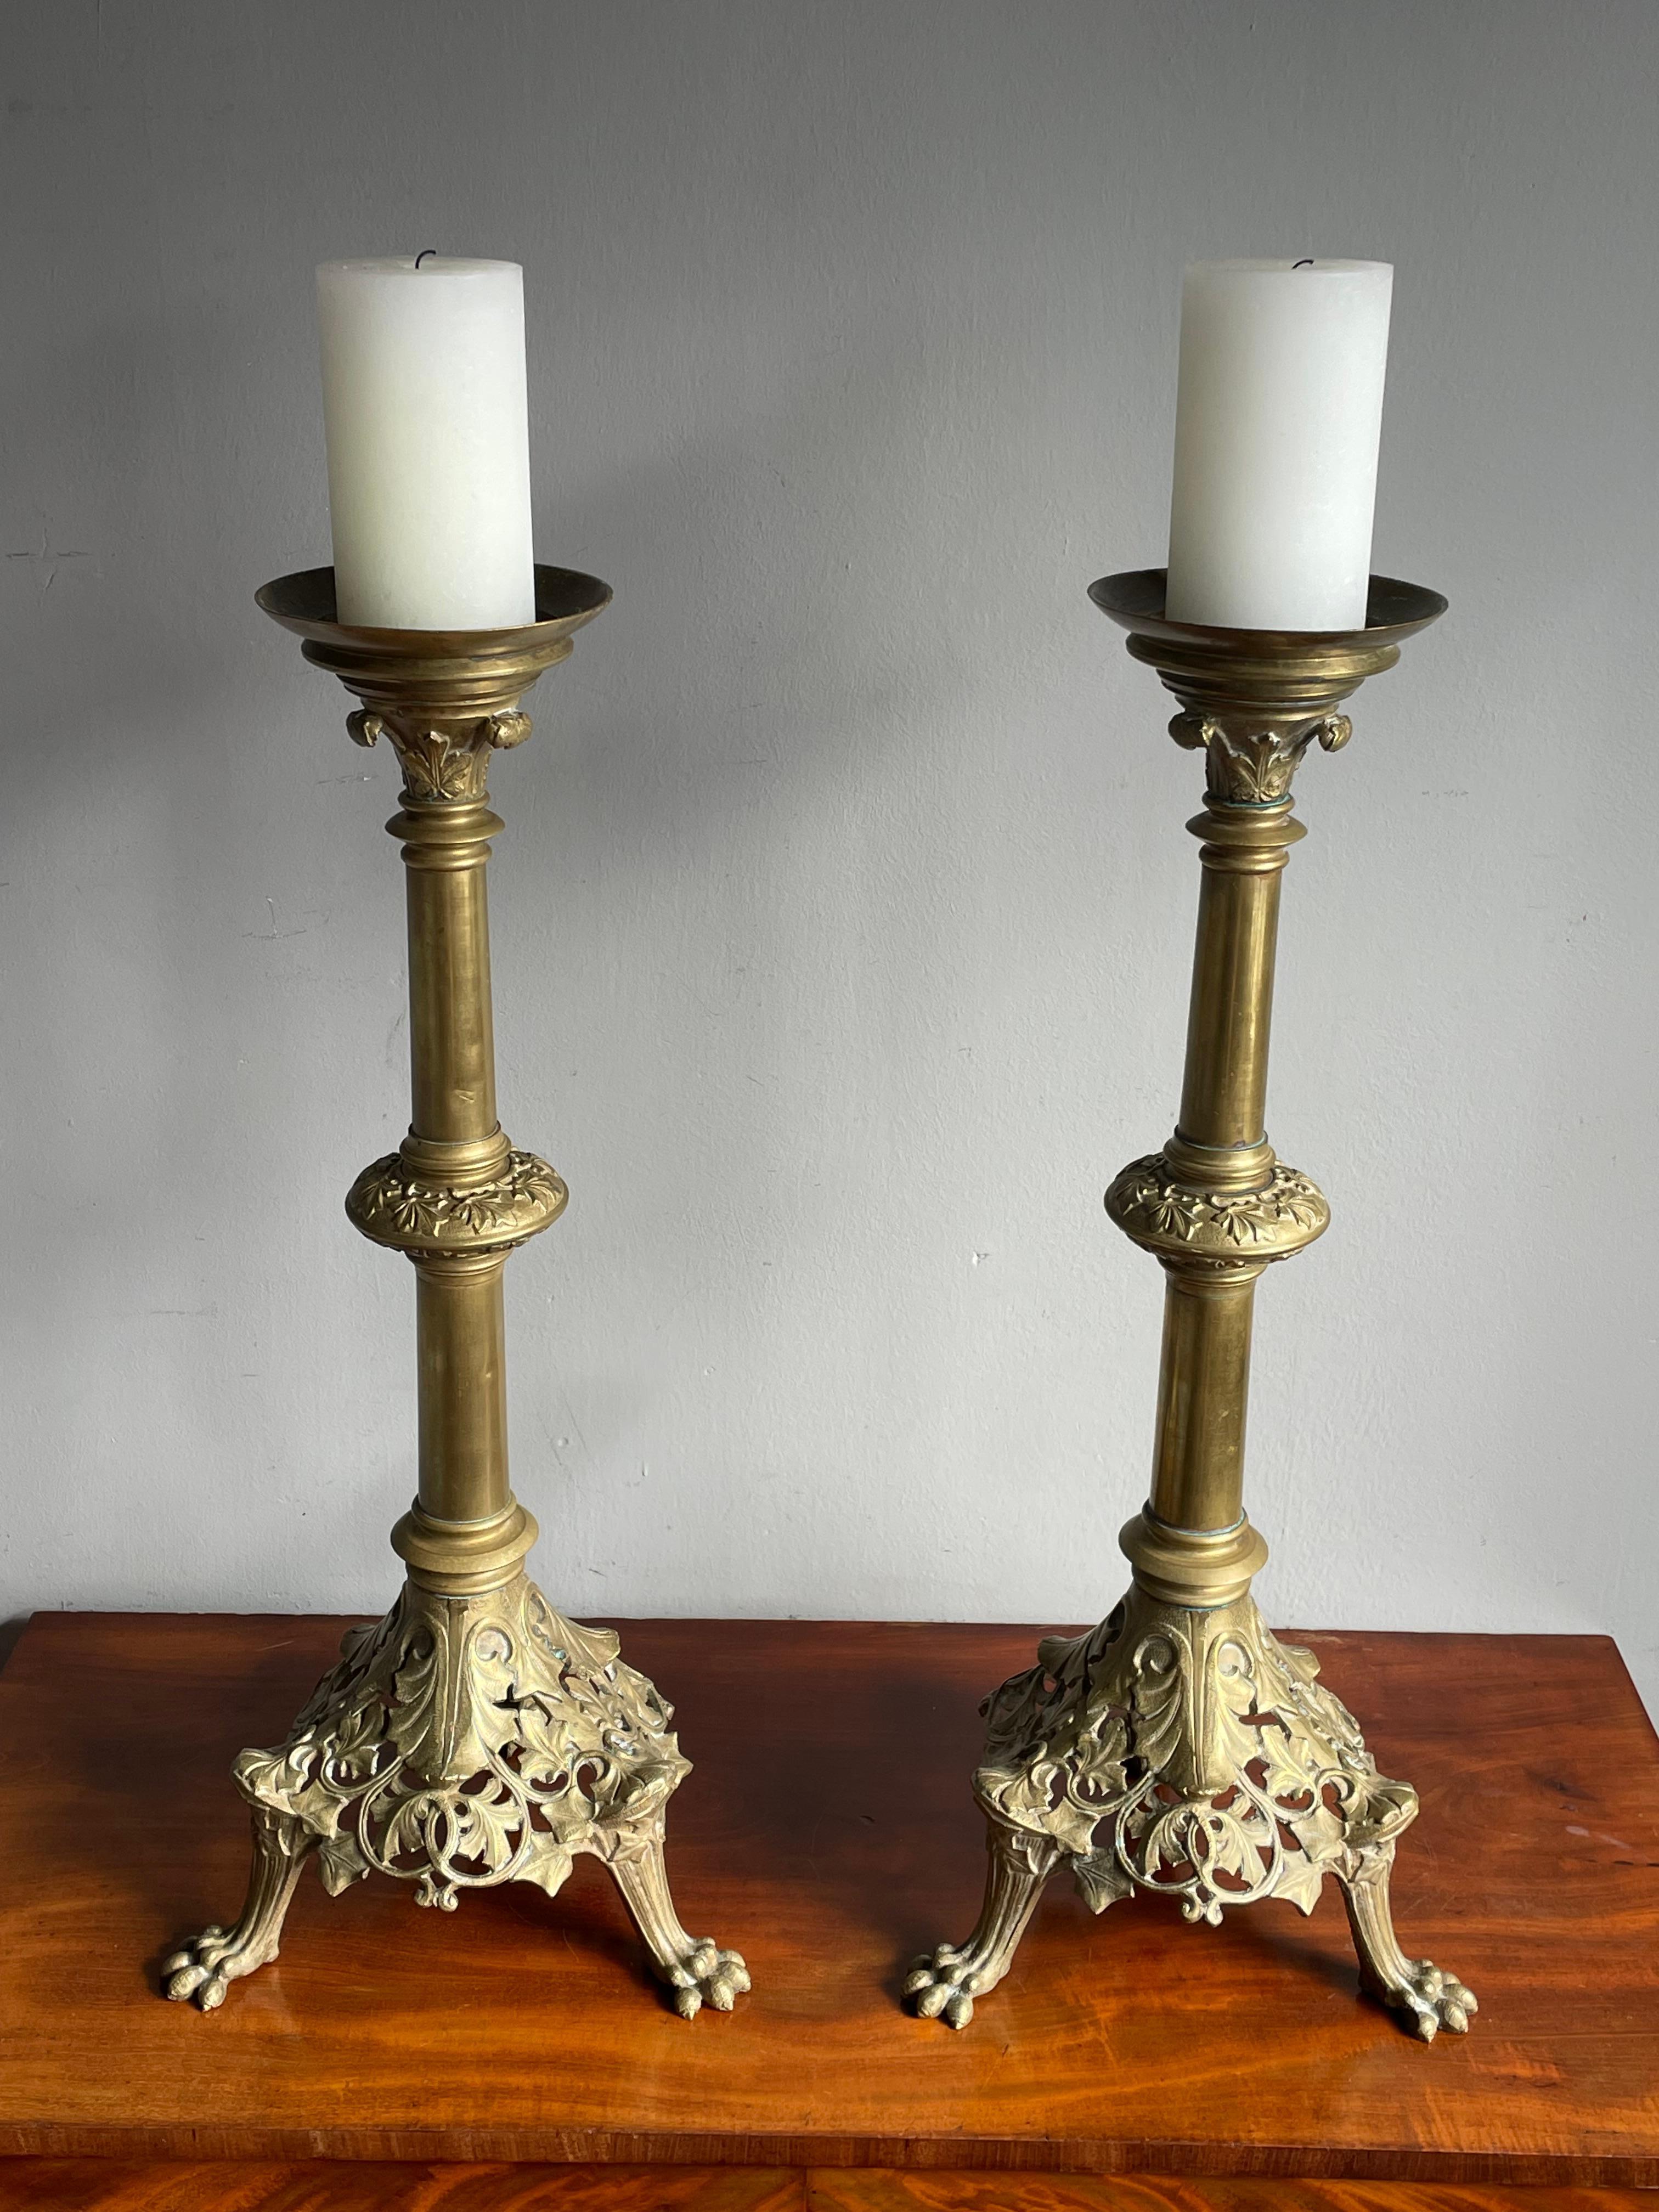 Wunderschönes Paar antiker Kerzenhalter im gotischen Stil.

Wenn Sie auf der Suche nach einem stilvollen und gut dimensionierten Paar Kirchenkerzenhalter sind, um eine besondere Atmosphäre zu schaffen, dann könnte dieses Paar aus Bronze perfekt für